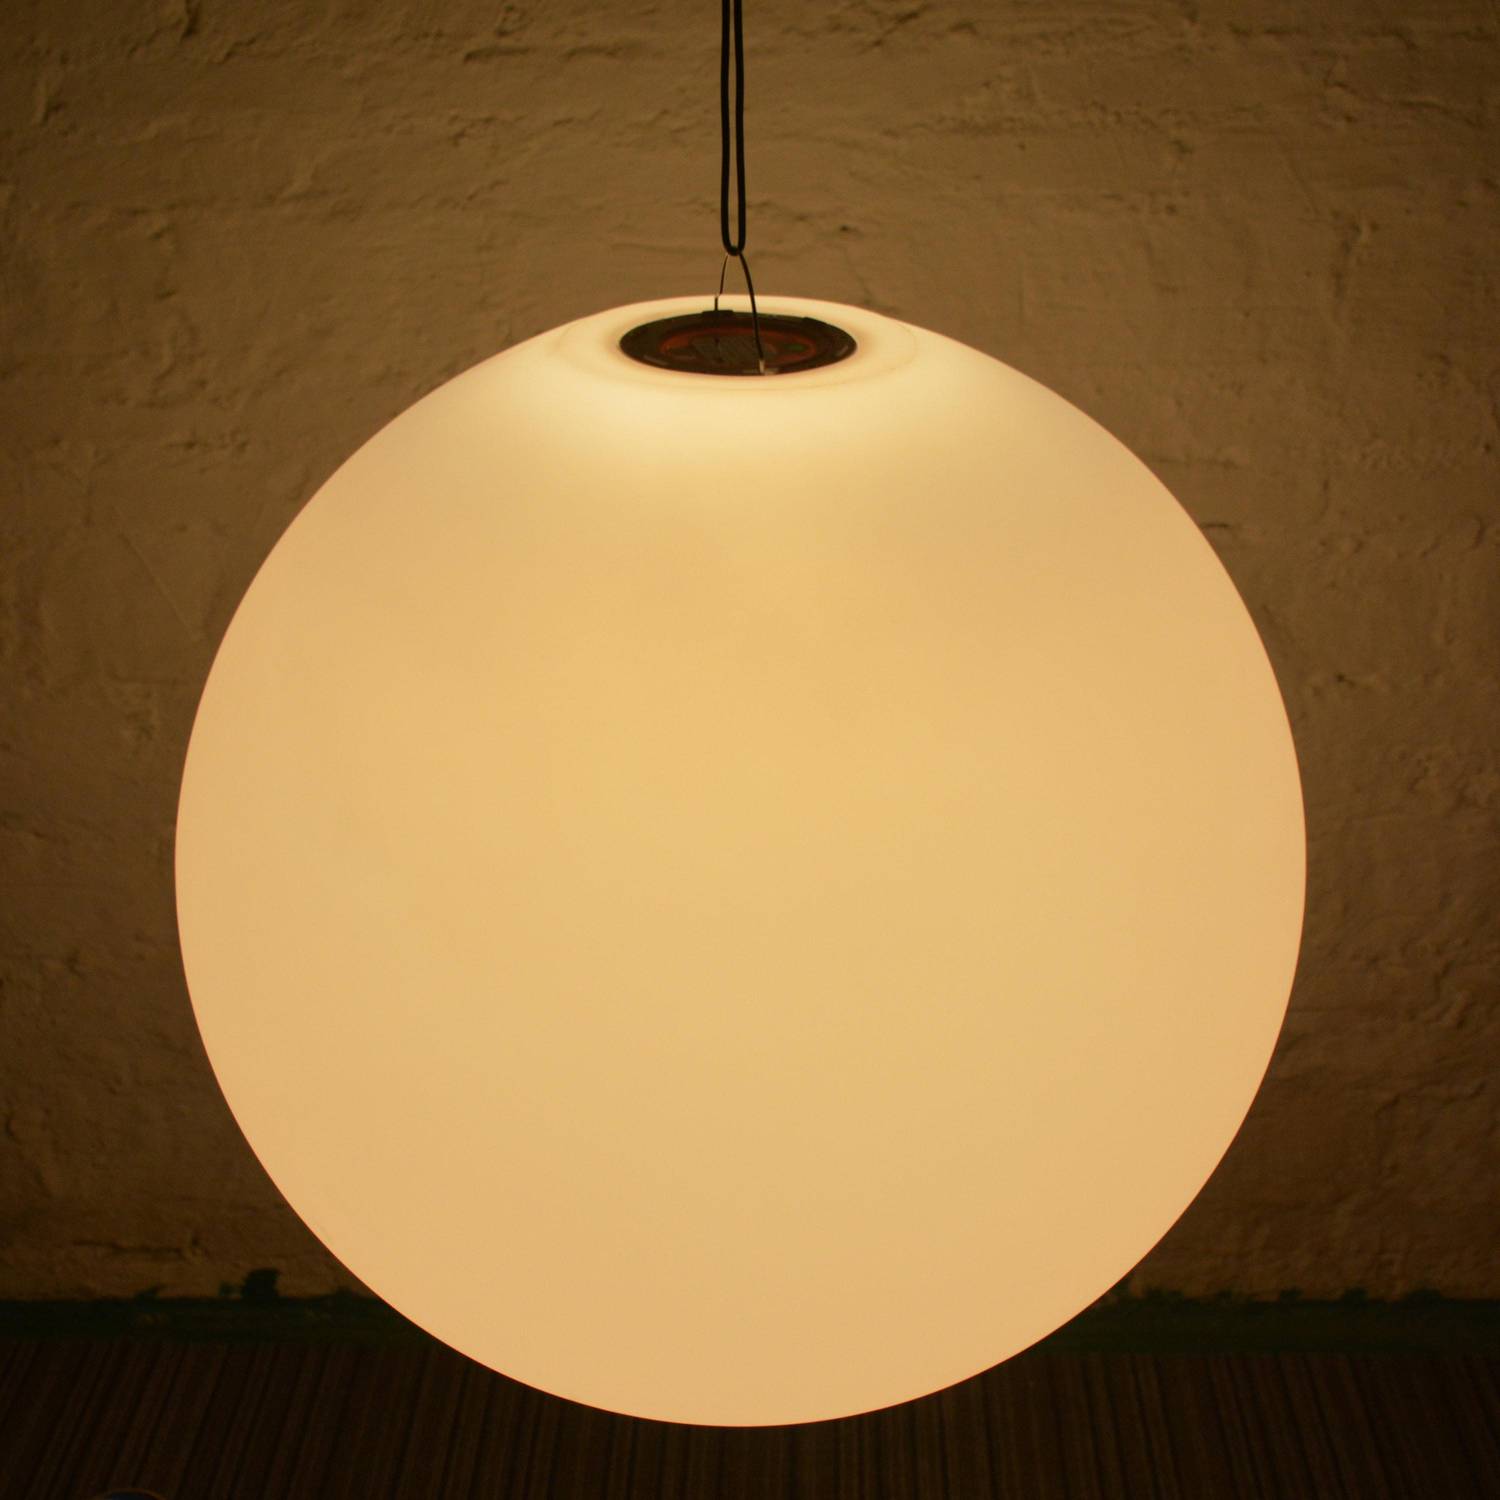 Boule LED 60cm – Sphère décorative lumineuse, Ø60cm, blanc chaud, commande à distance Photo5